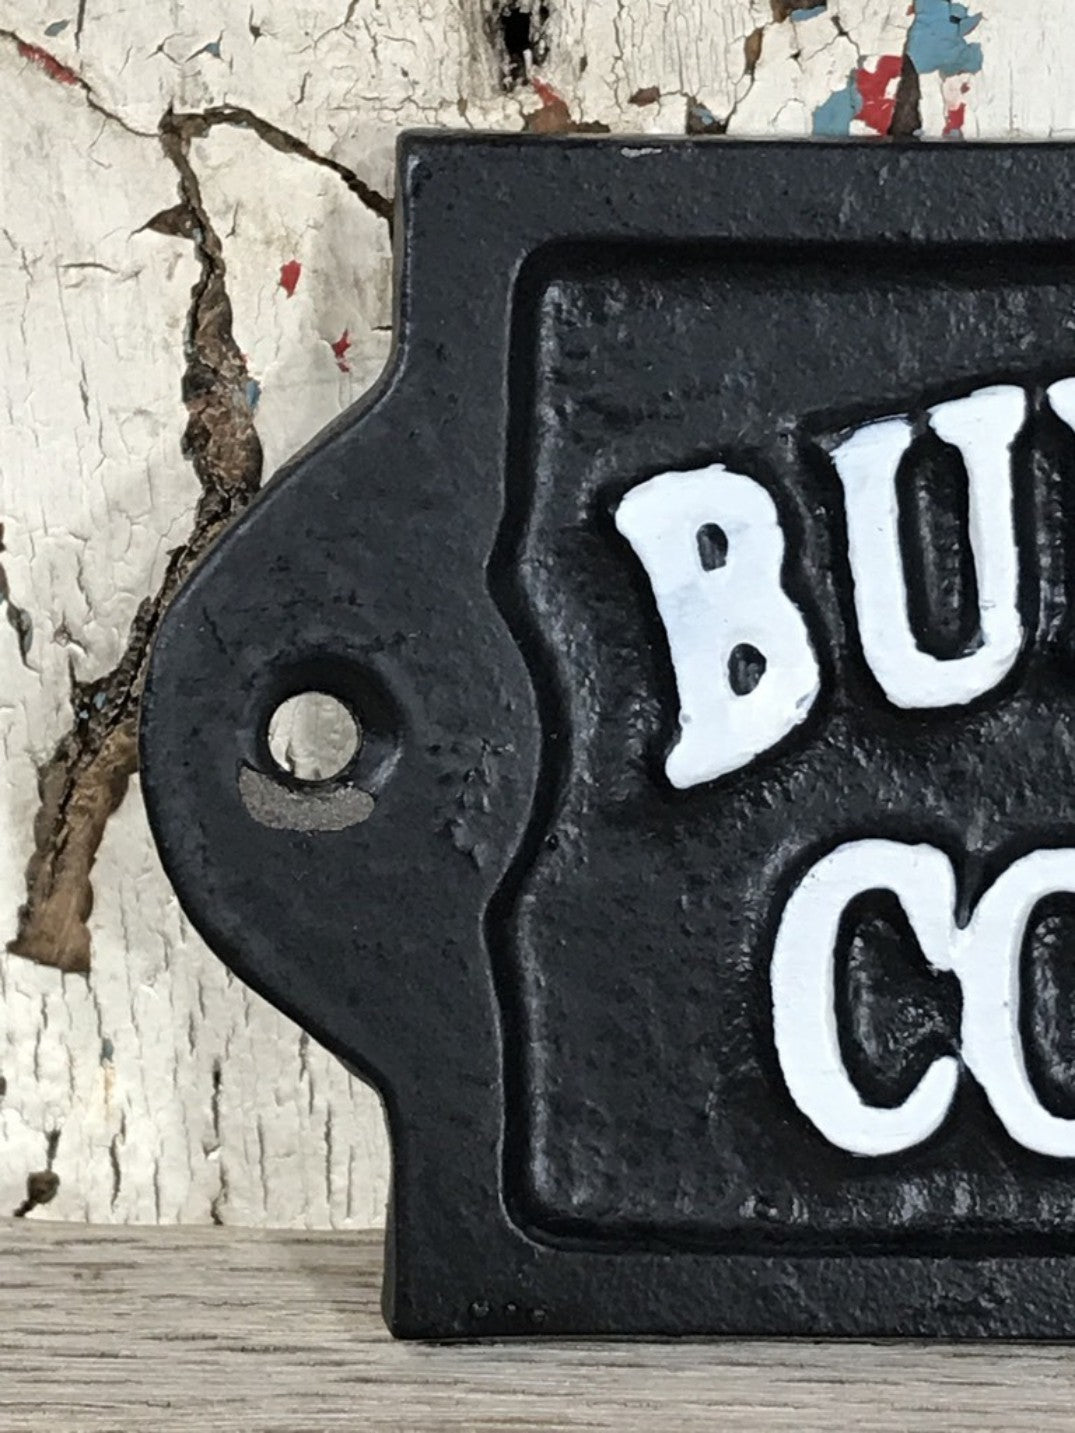 Funny Rude Black & White Wall Sign Cast Iron “BULLSH T CORNER”